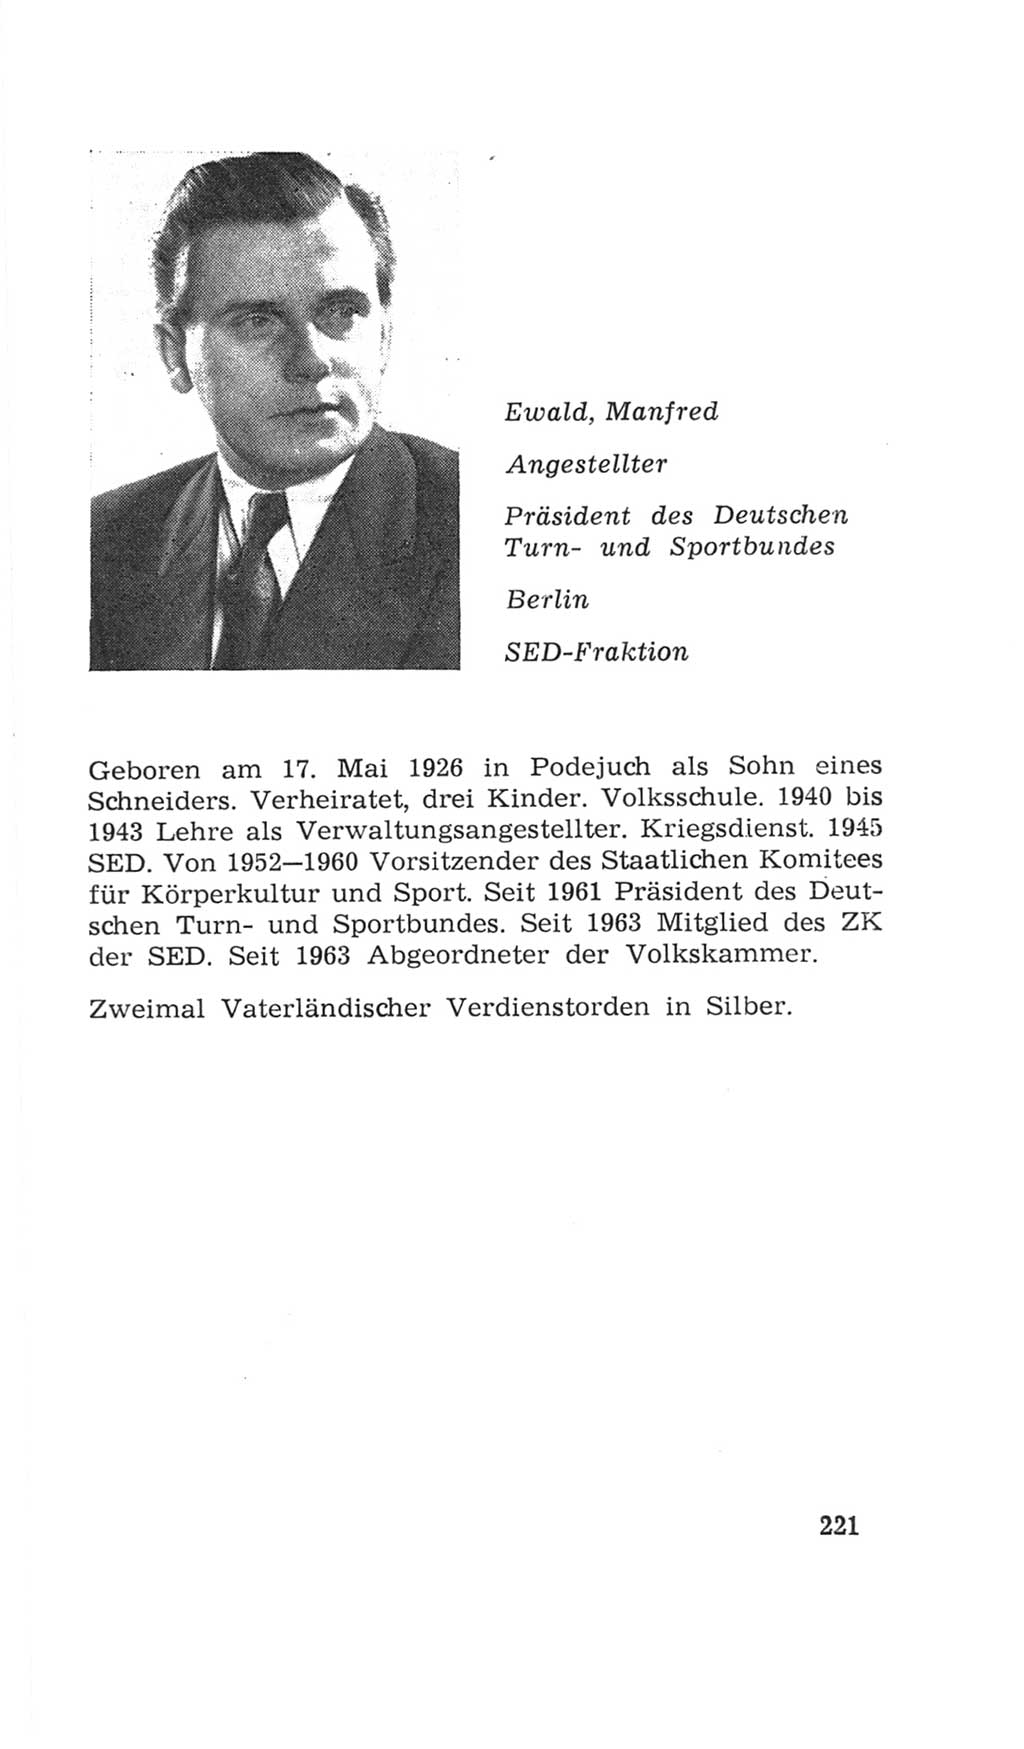 Volkskammer (VK) der Deutschen Demokratischen Republik (DDR), 4. Wahlperiode 1963-1967, Seite 221 (VK. DDR 4. WP. 1963-1967, S. 221)